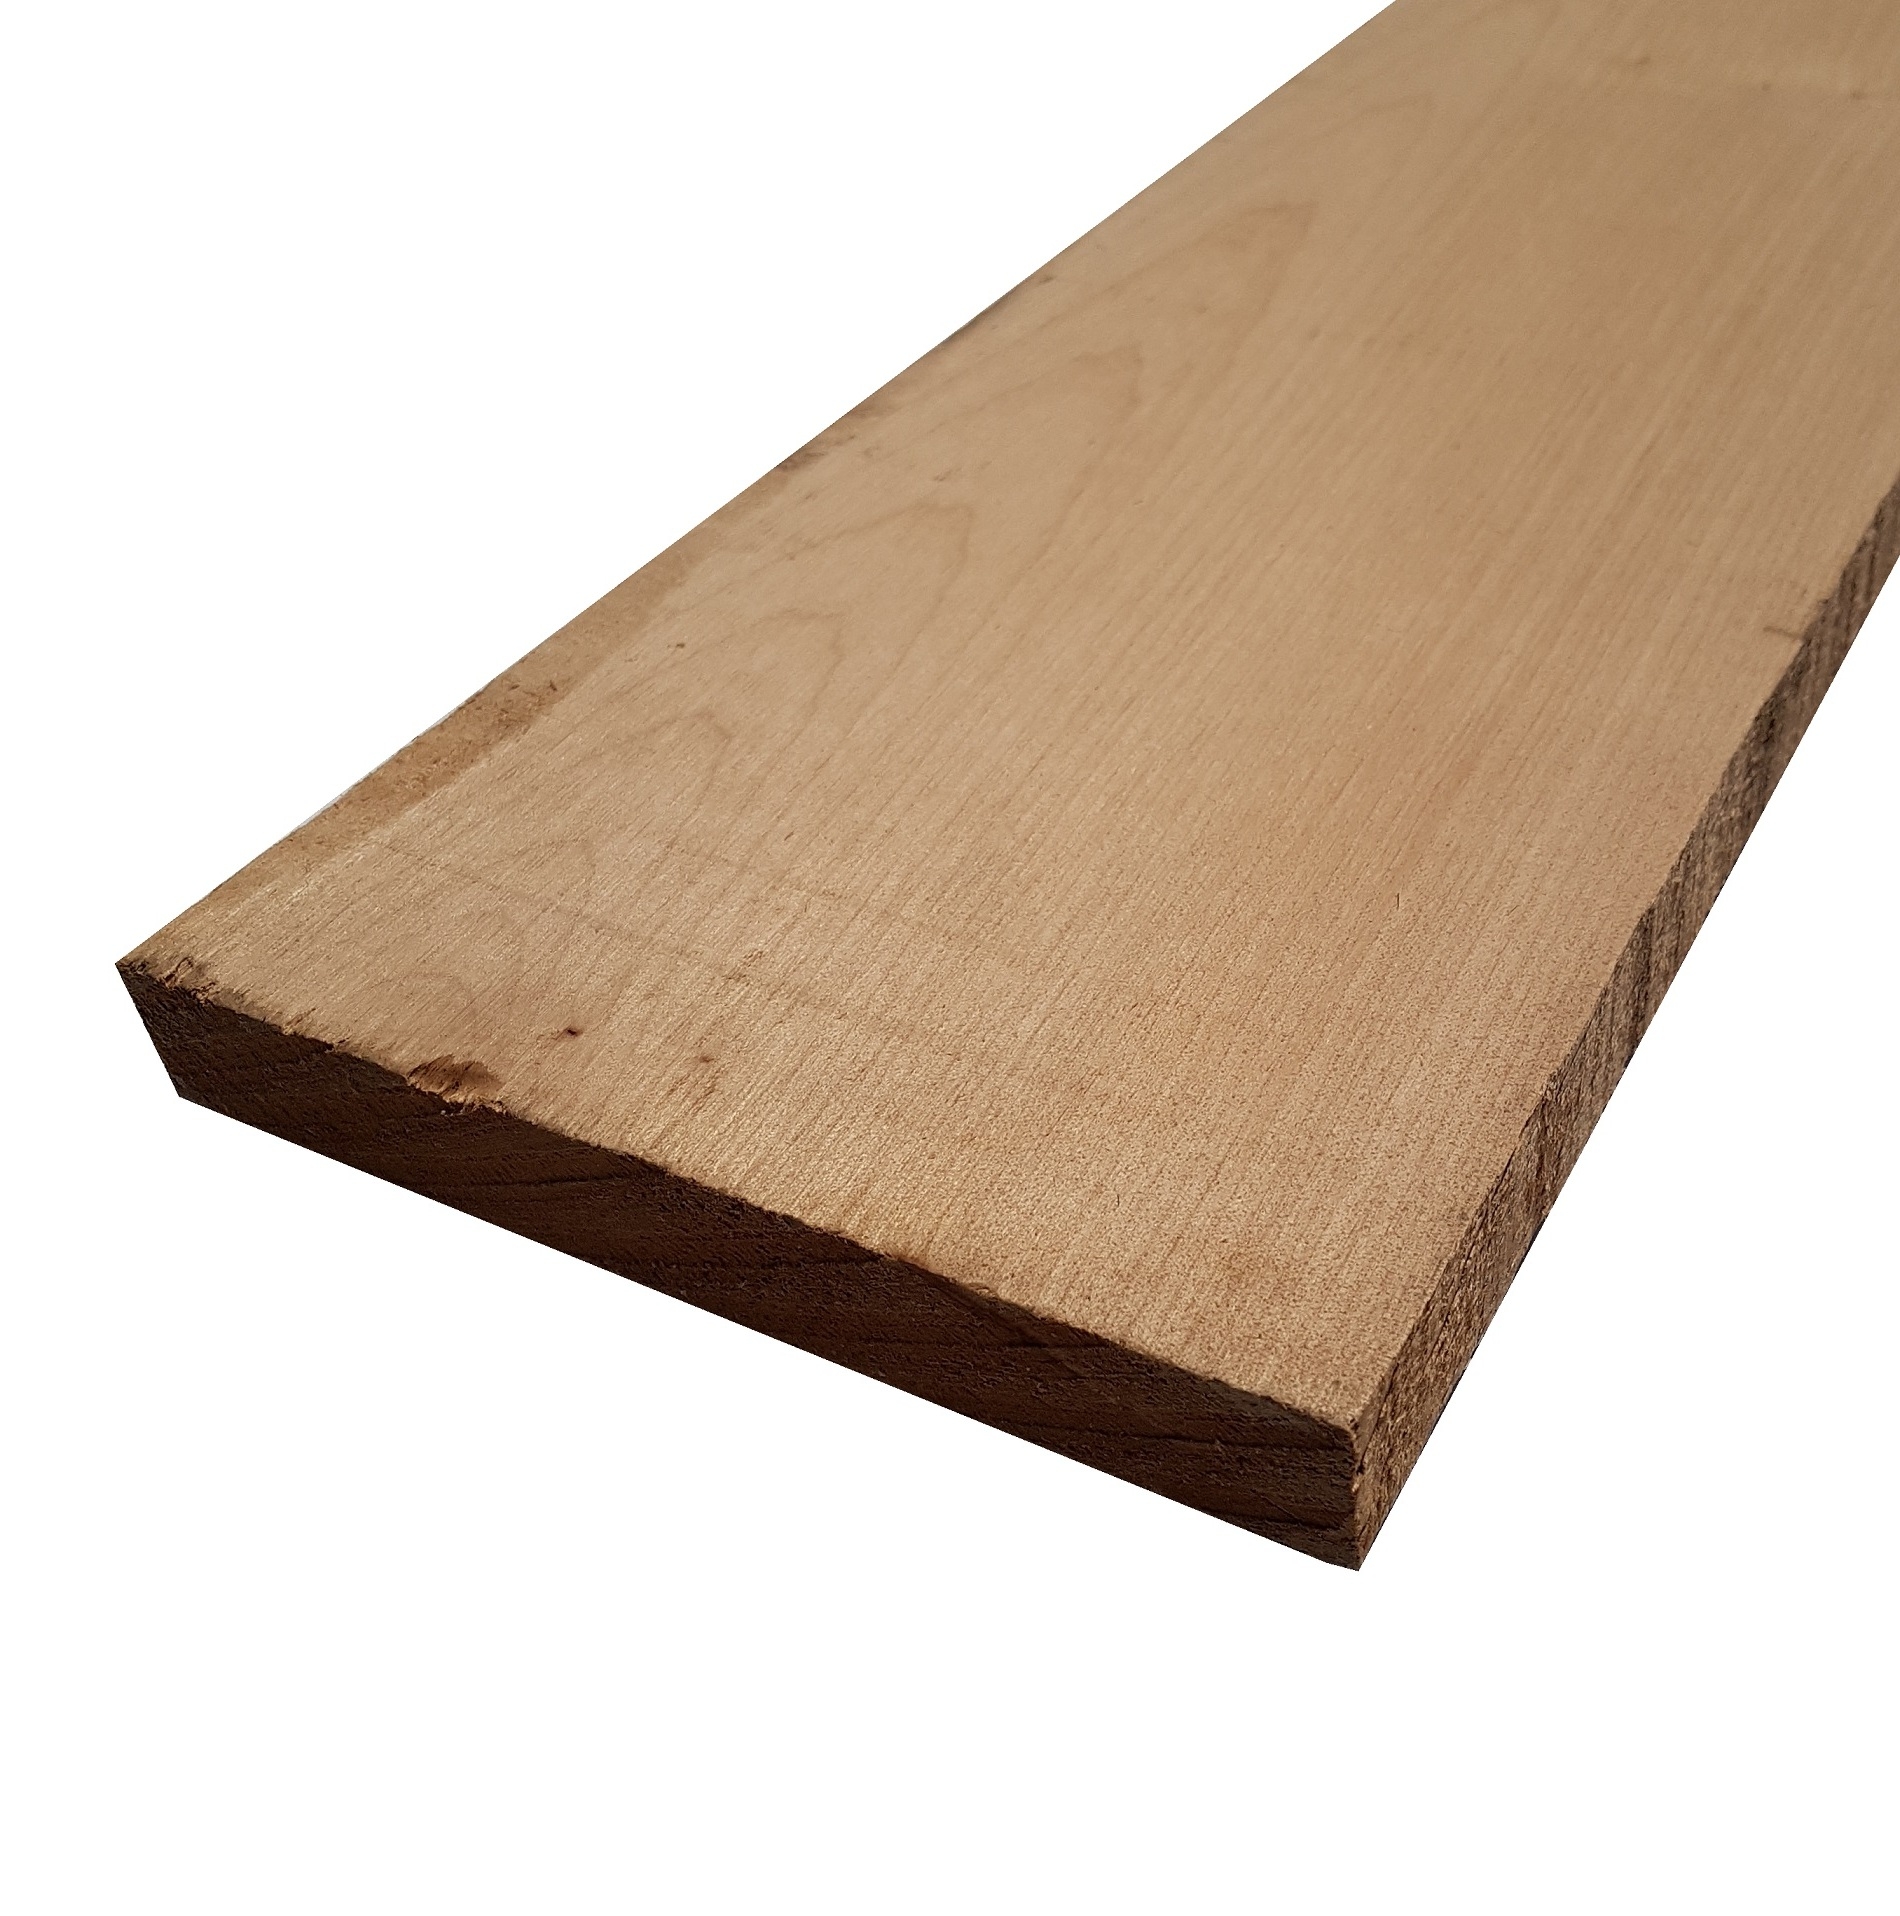 Tavola legno di Acero Pacific Coast Maple Calibrato refilato grezzo mm 24 x 100 x 2440